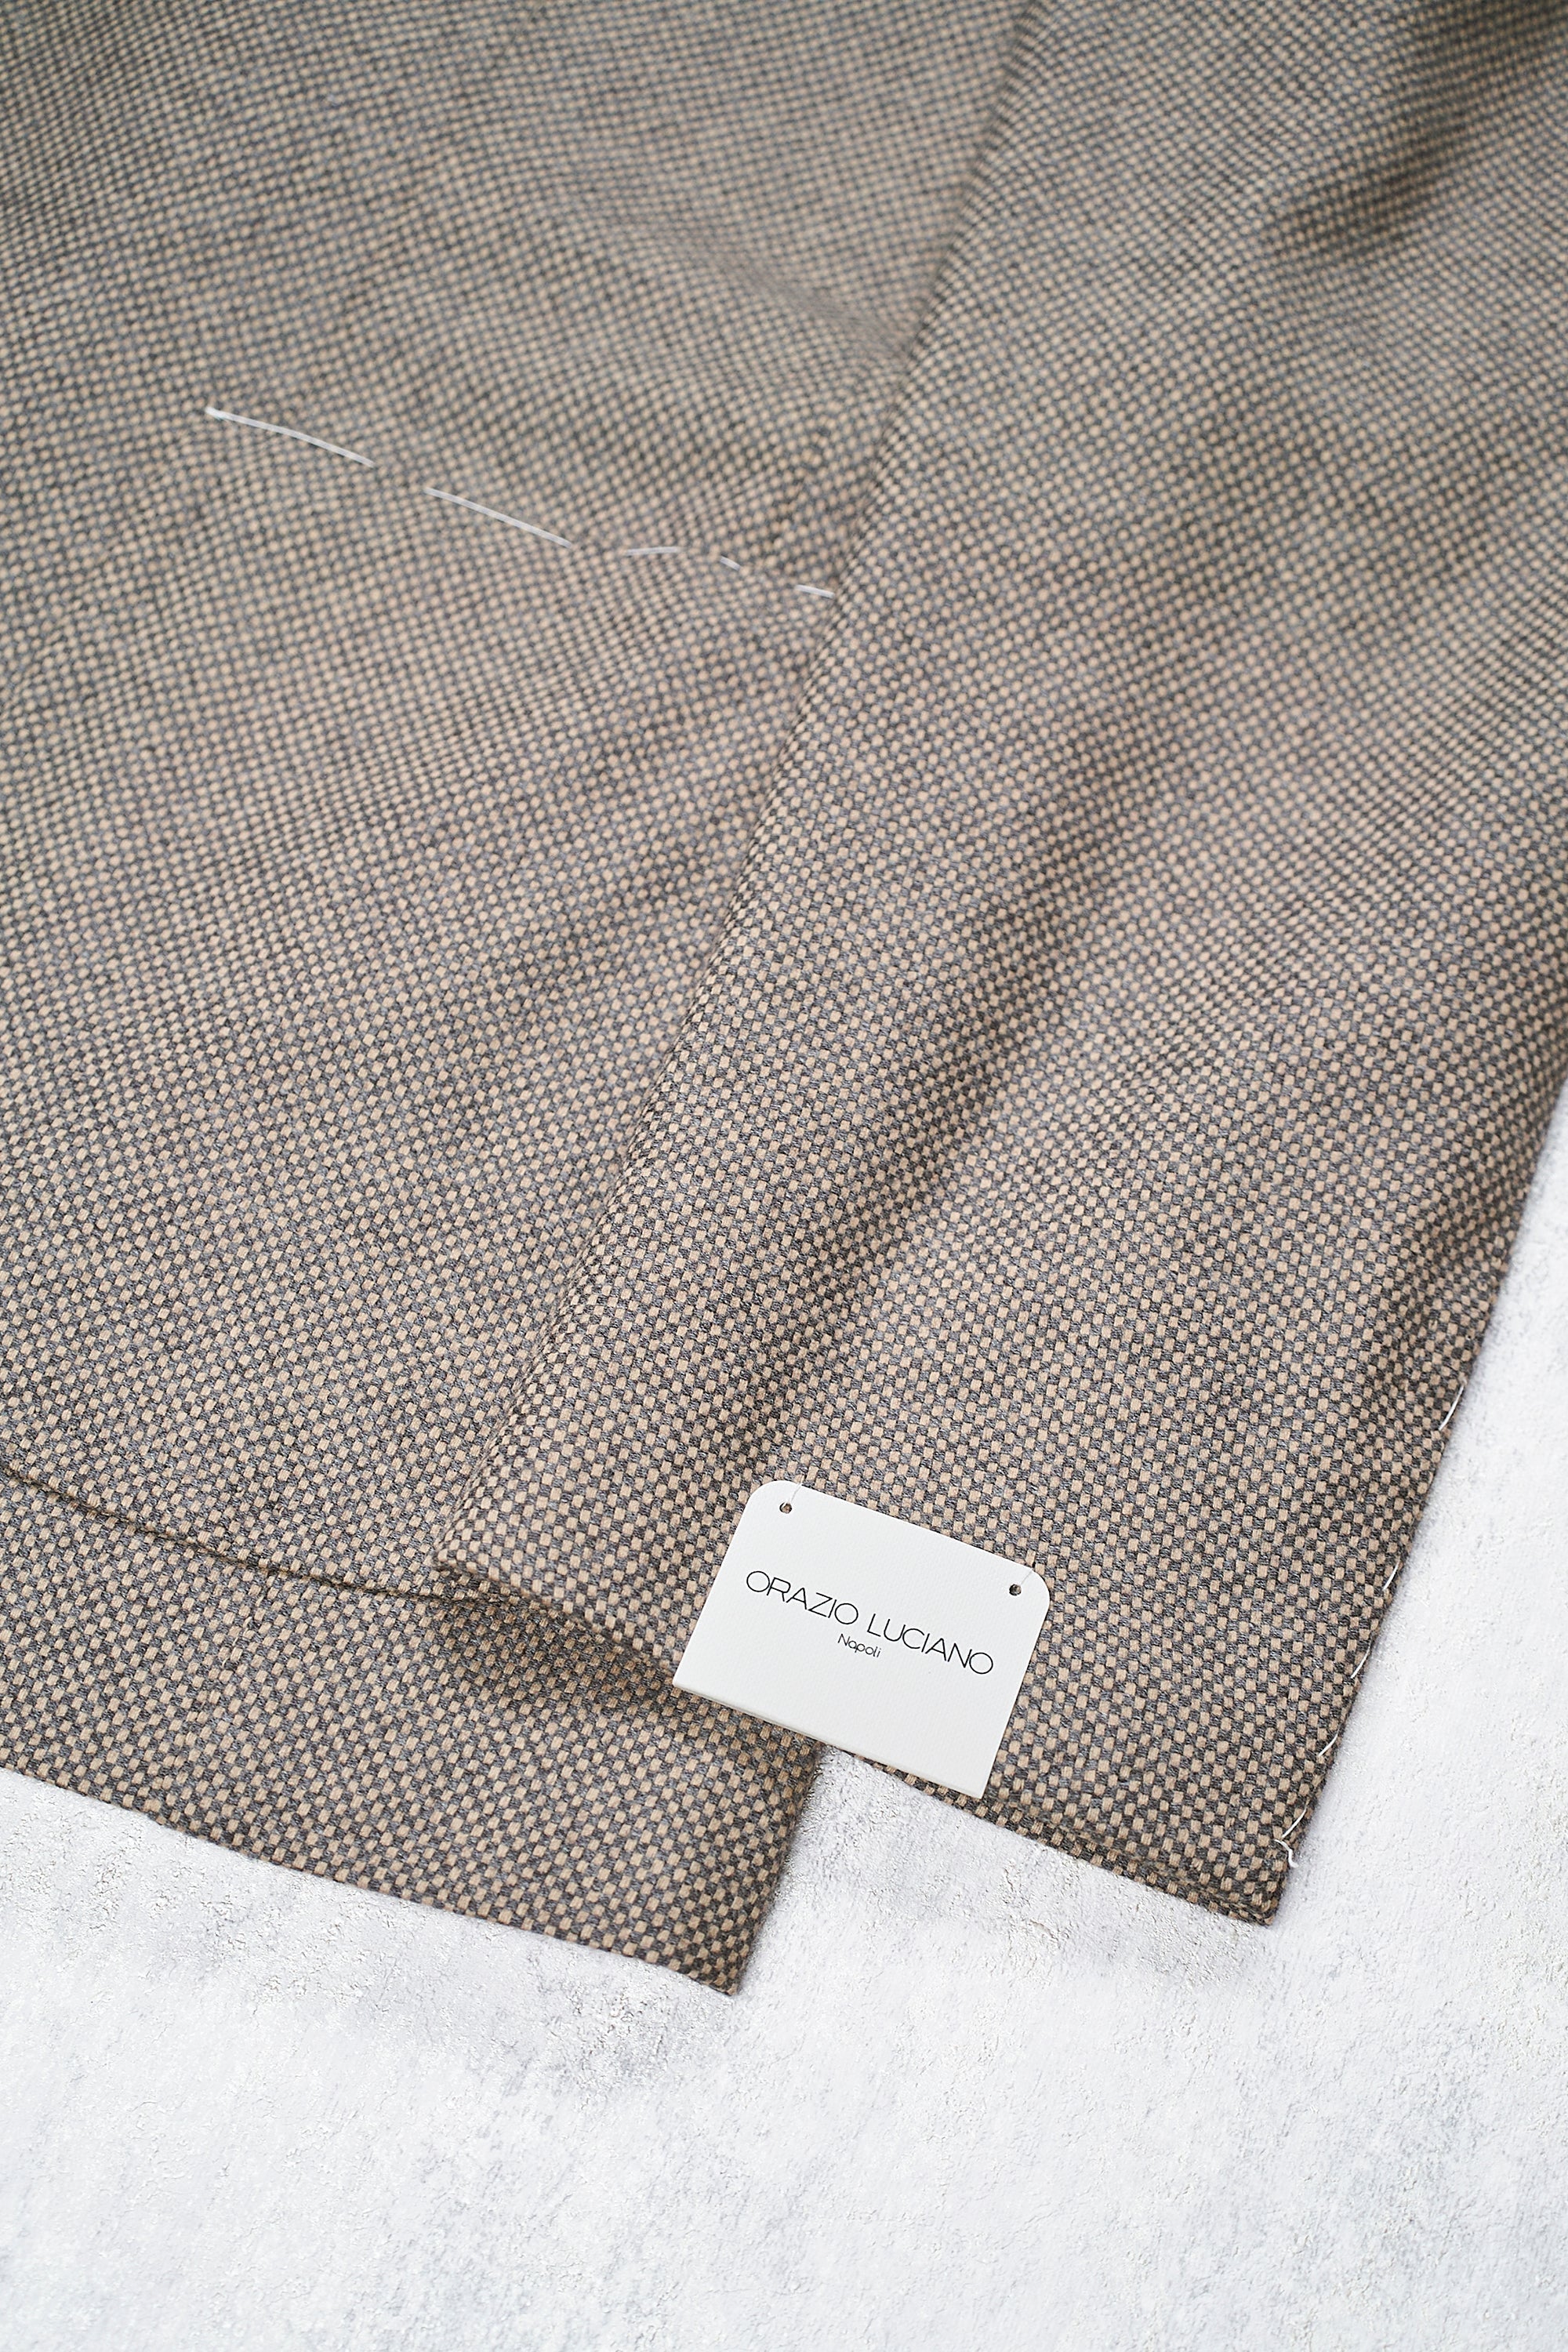 Orazio Luciano Grey/Beige Weave Wool Sport Coat